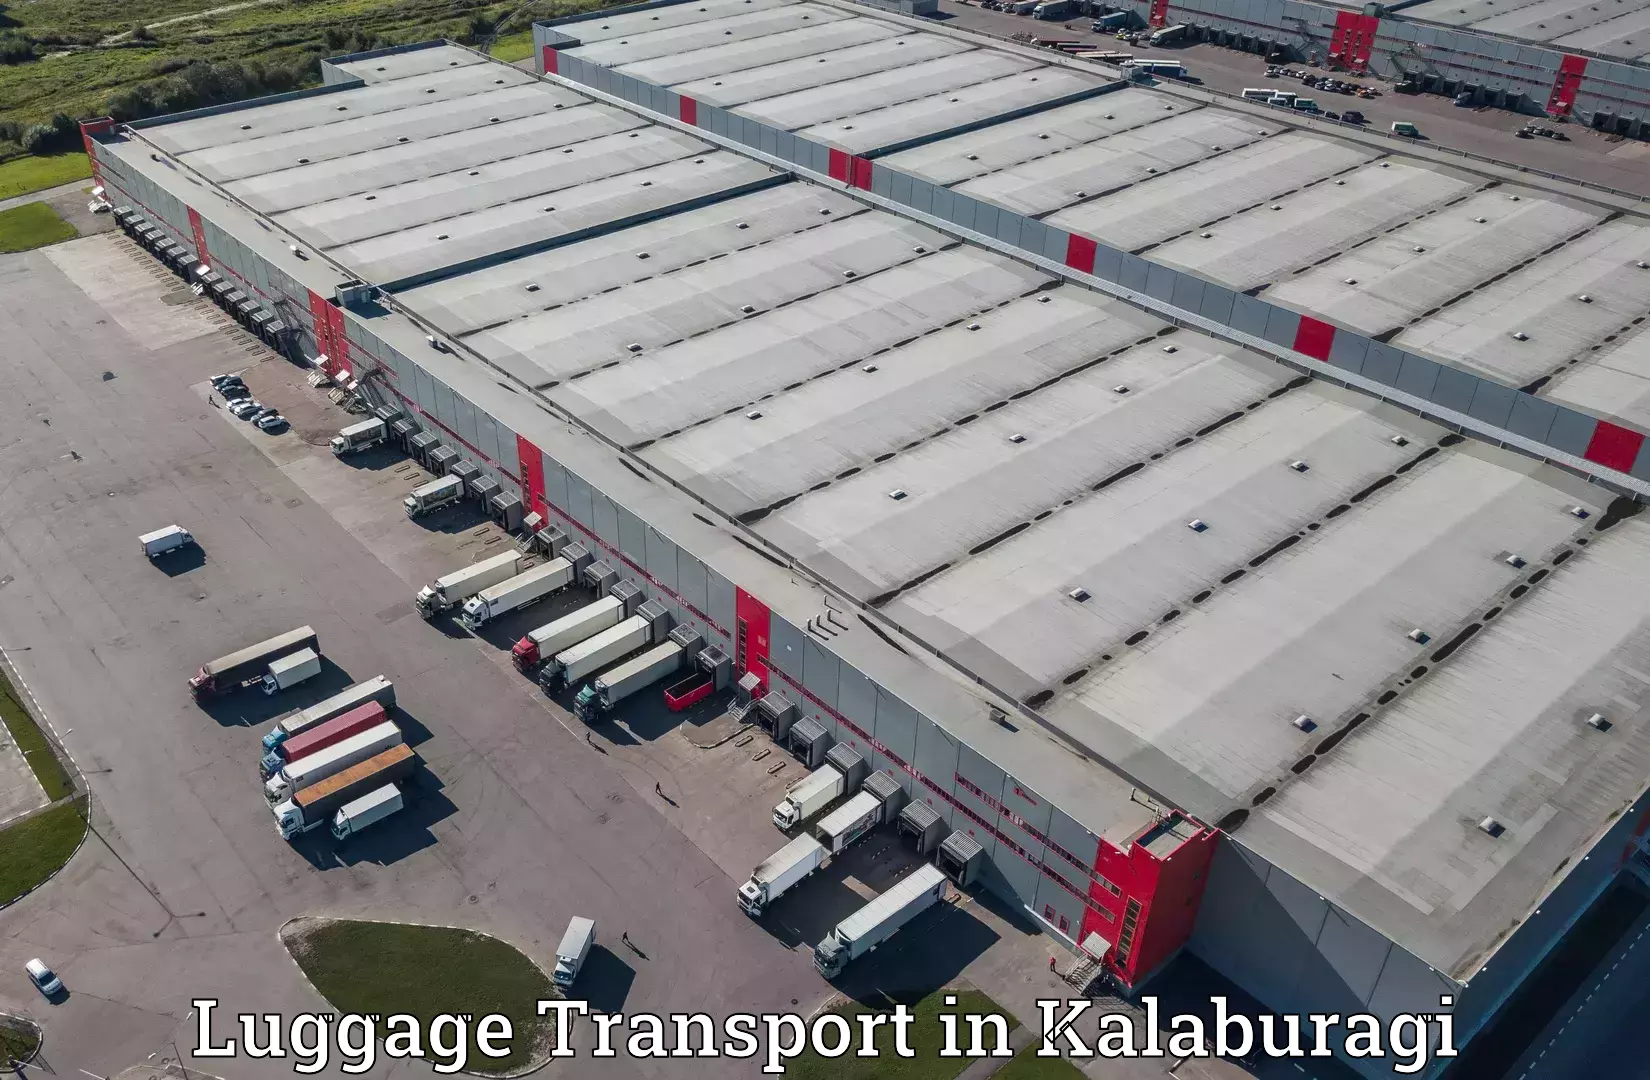 Luggage shipping discounts in Kalaburagi